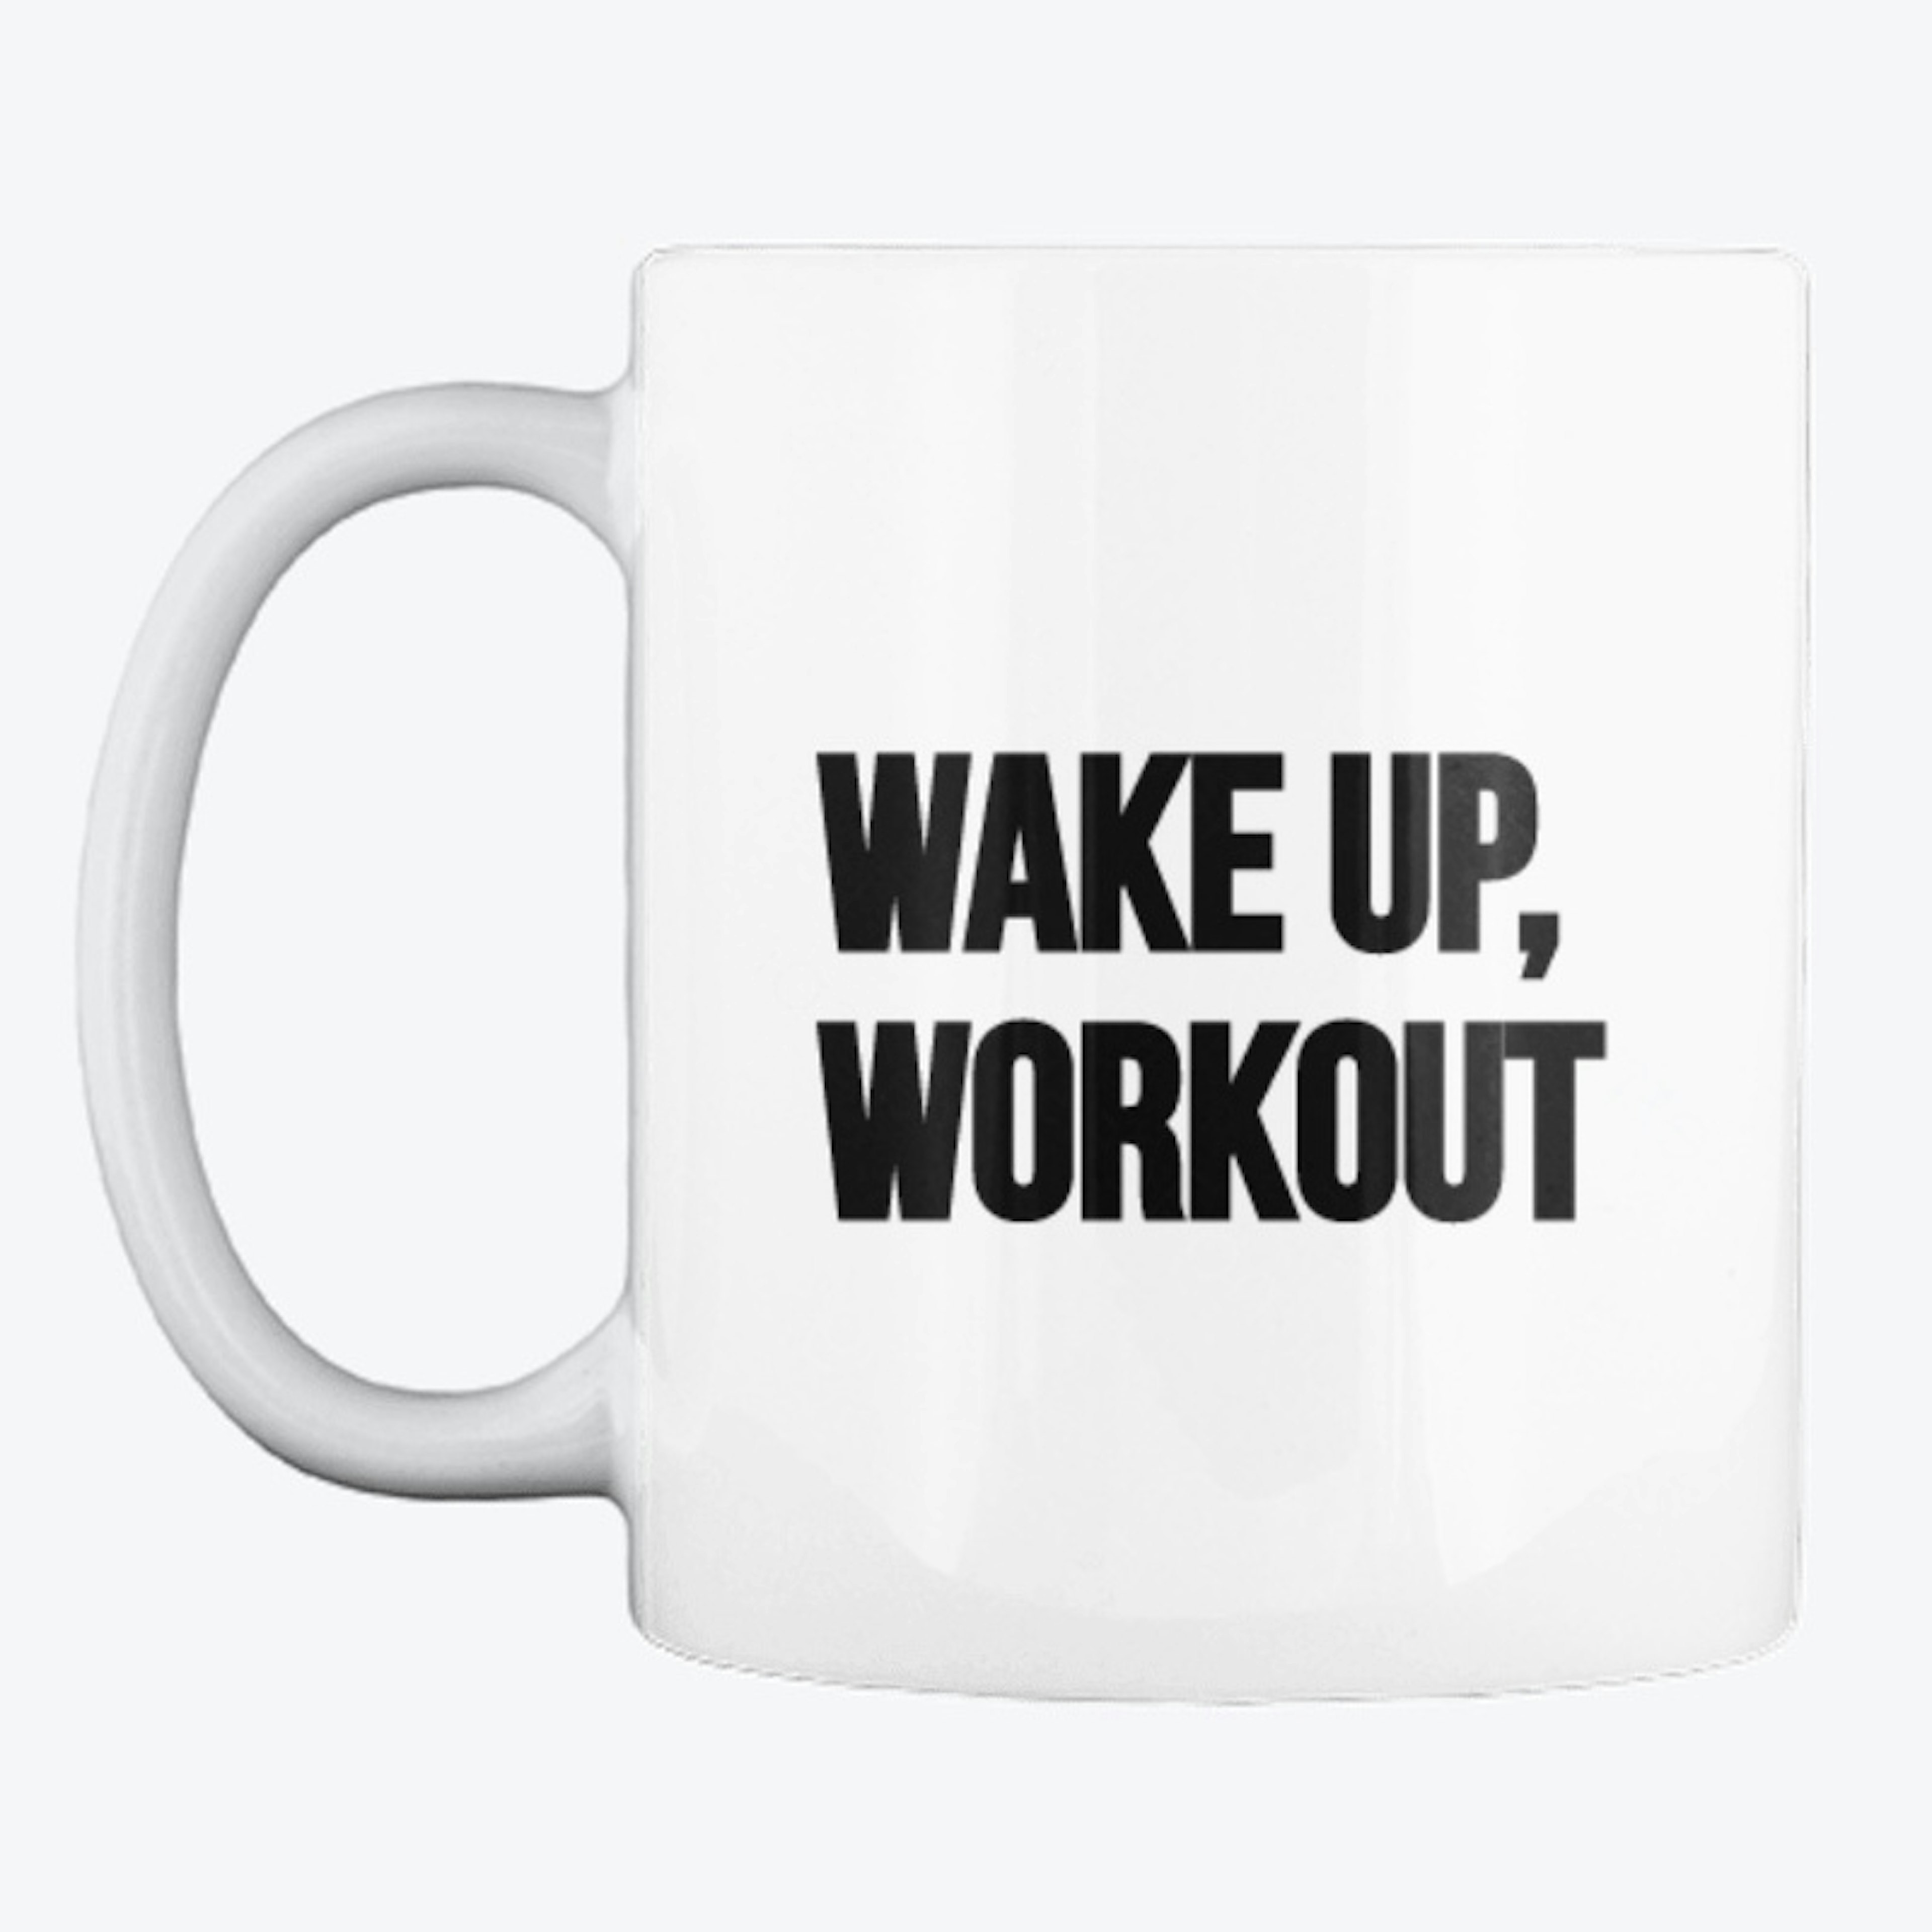 Wake Up, Workout Mug